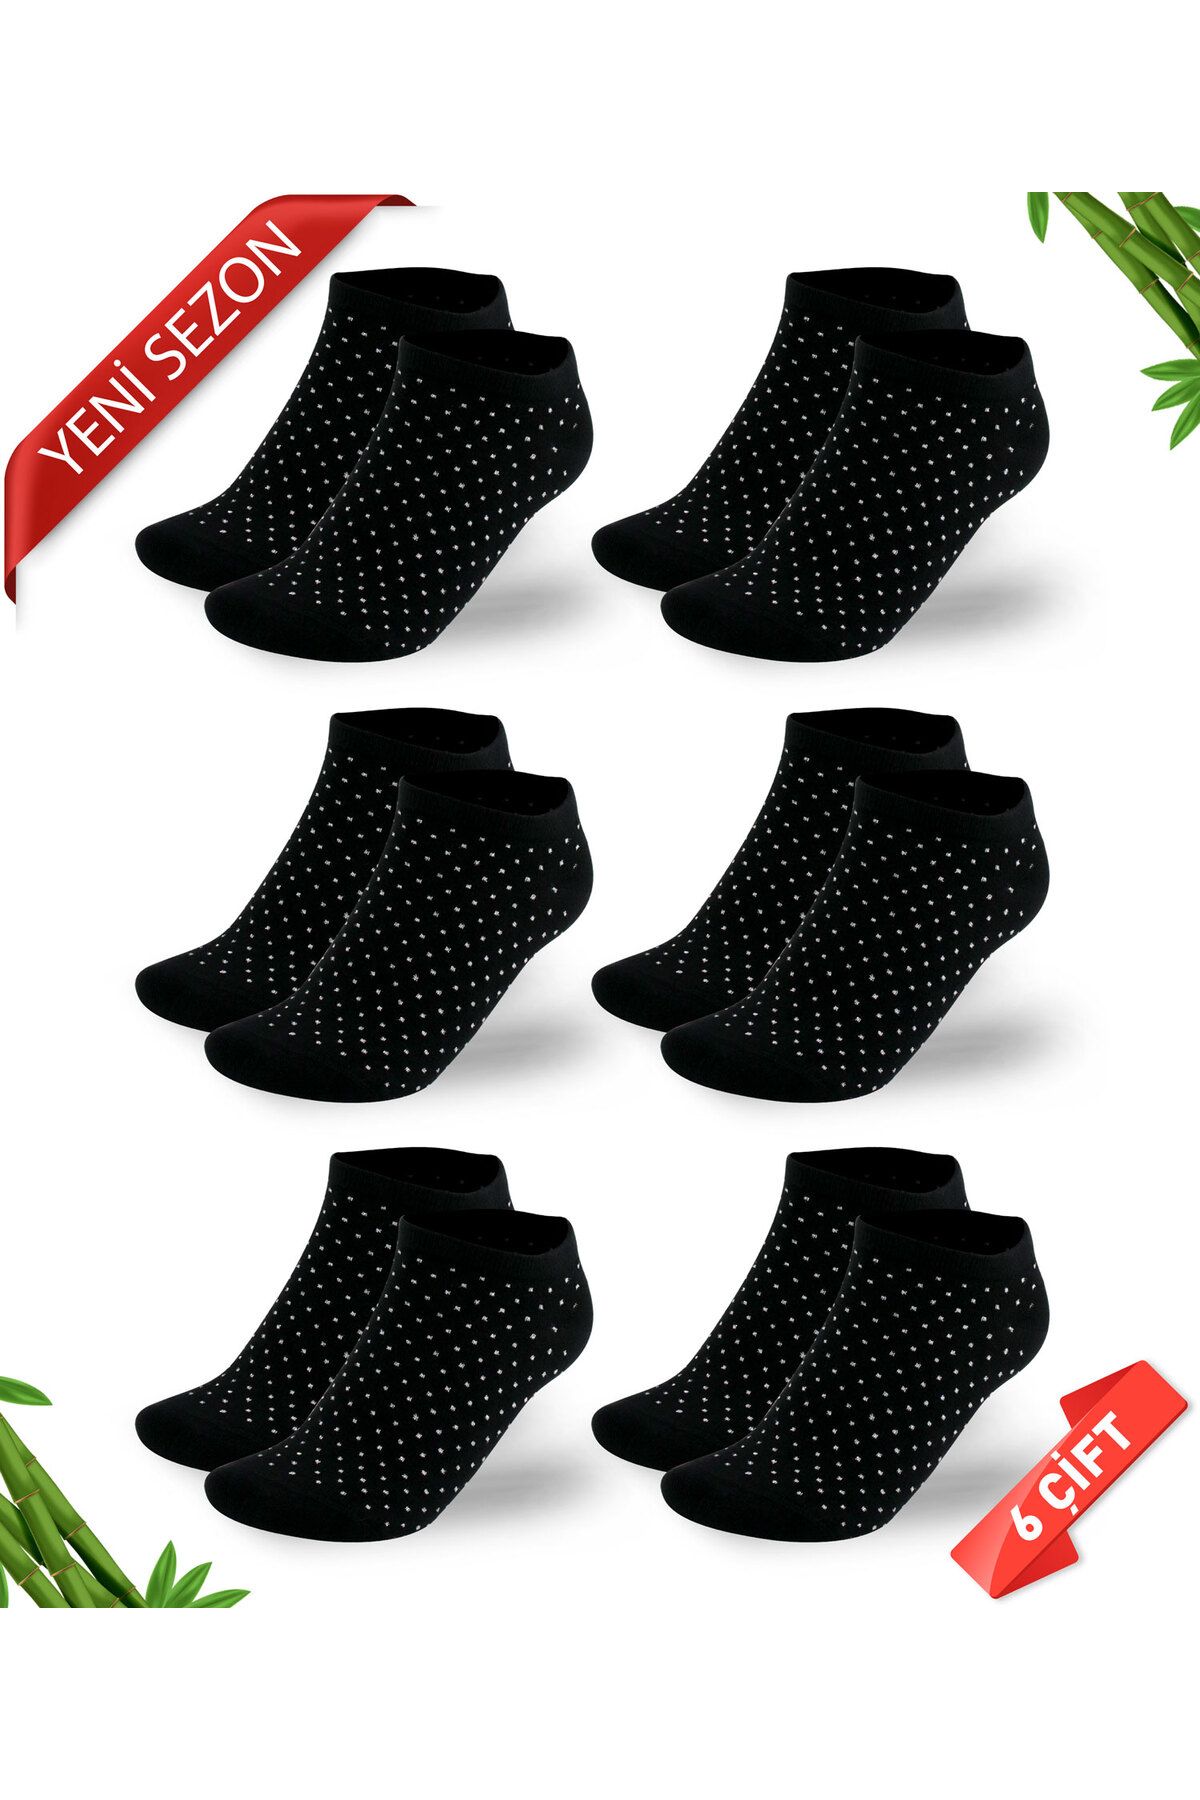 DAYCO Simli Nokta Desenli Siyah Renk Kadın Bambu Patik Çorap 6lı Set